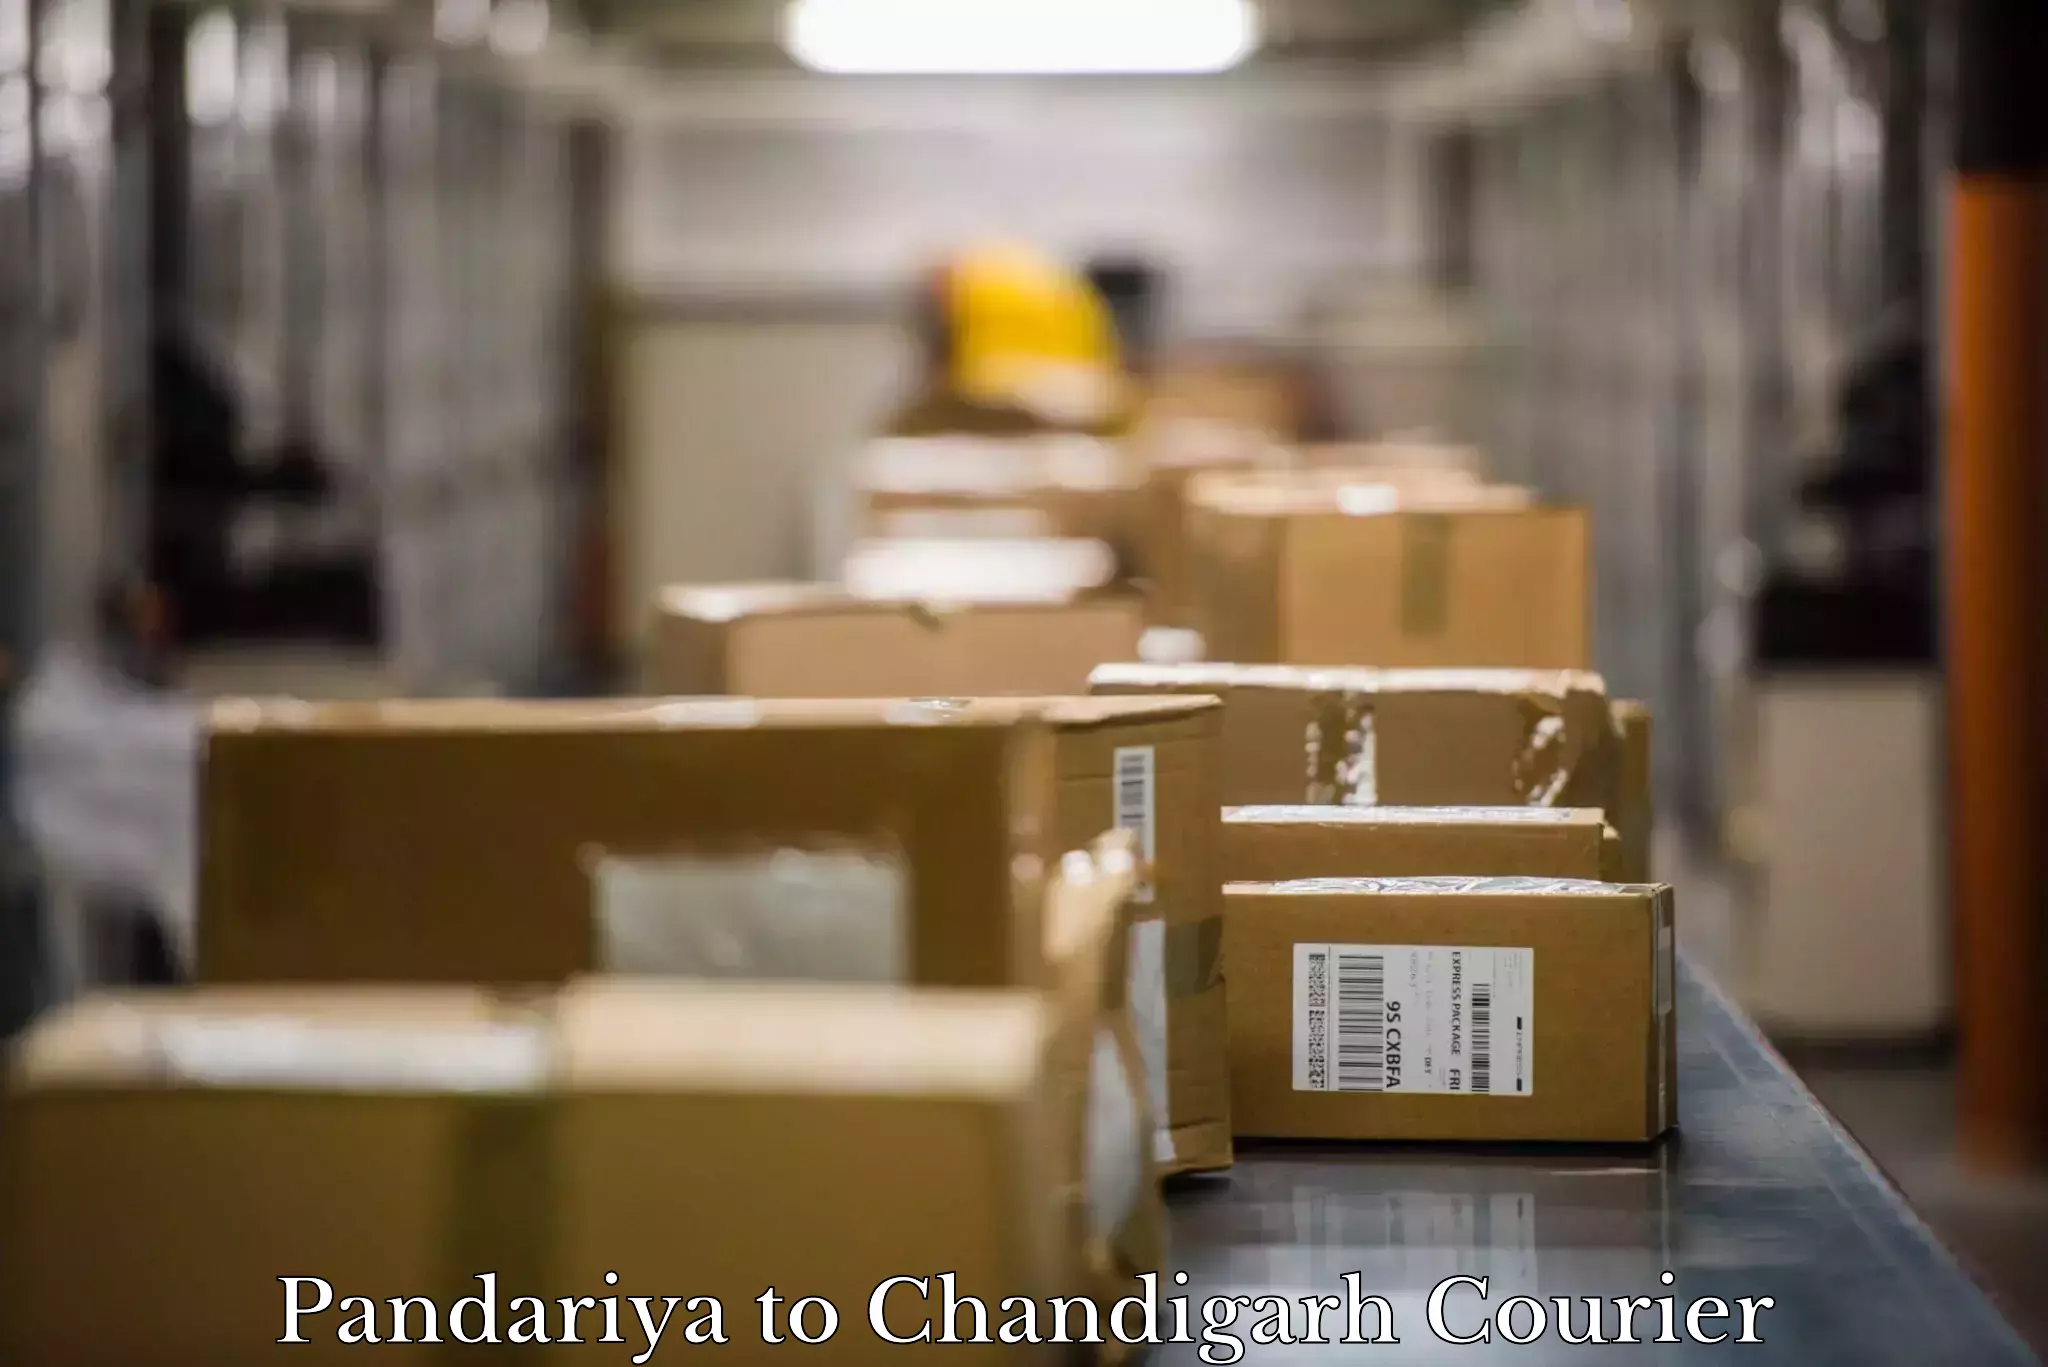 Furniture relocation experts Pandariya to Chandigarh